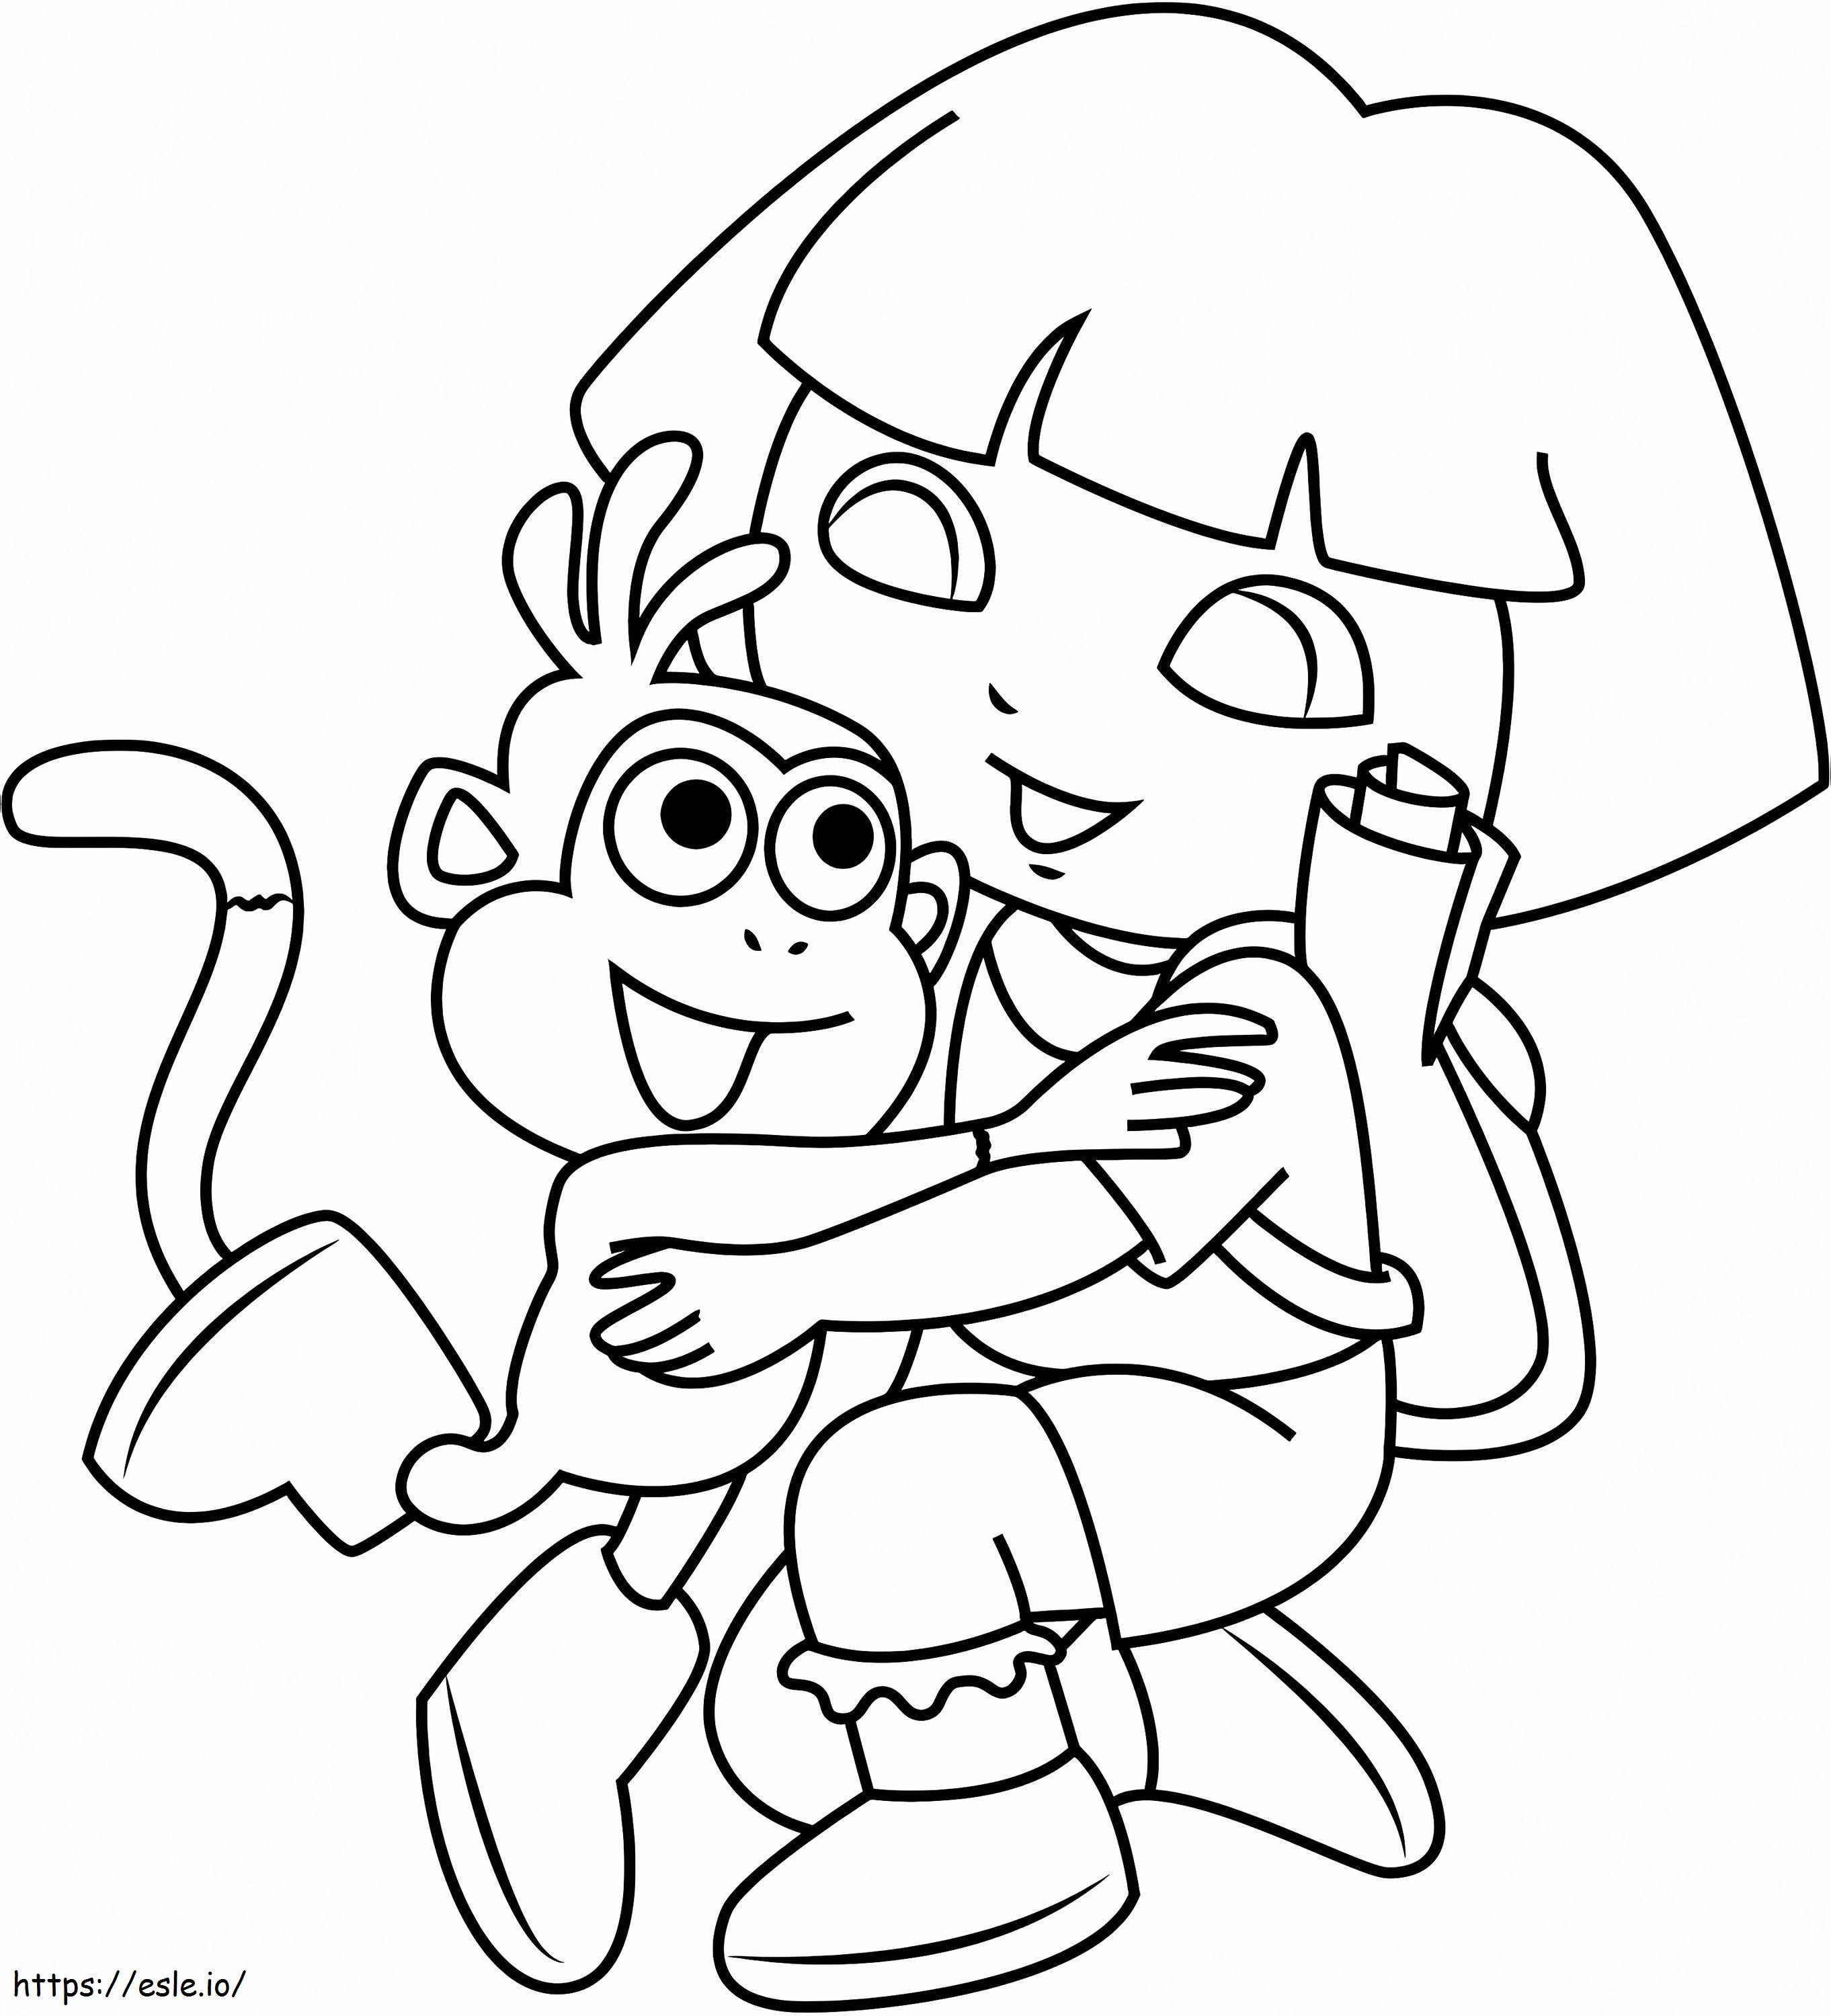 1531187806 Dora Abrazando Mono A4 para colorear